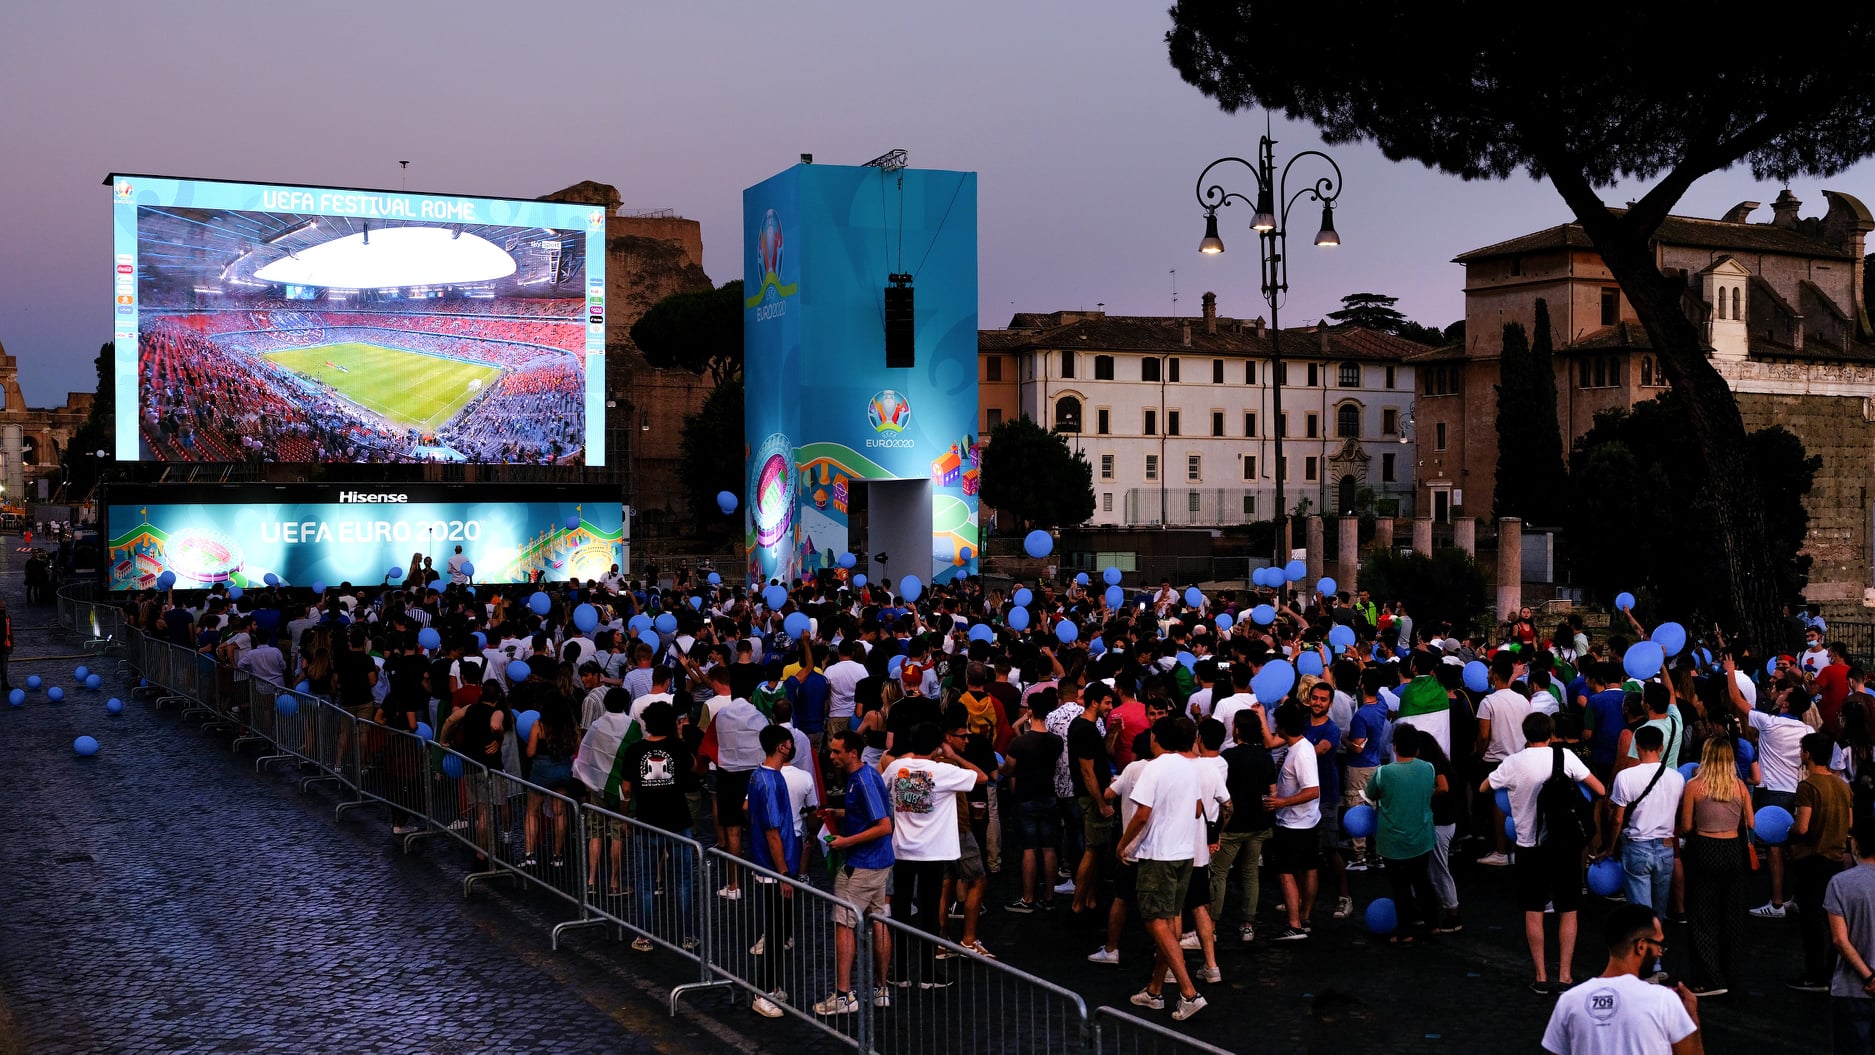 اورو 2020 : السلطات الايطالية تمنع المشاهدة الجماعية للمباراة النهائية في الملعب الأولمبي